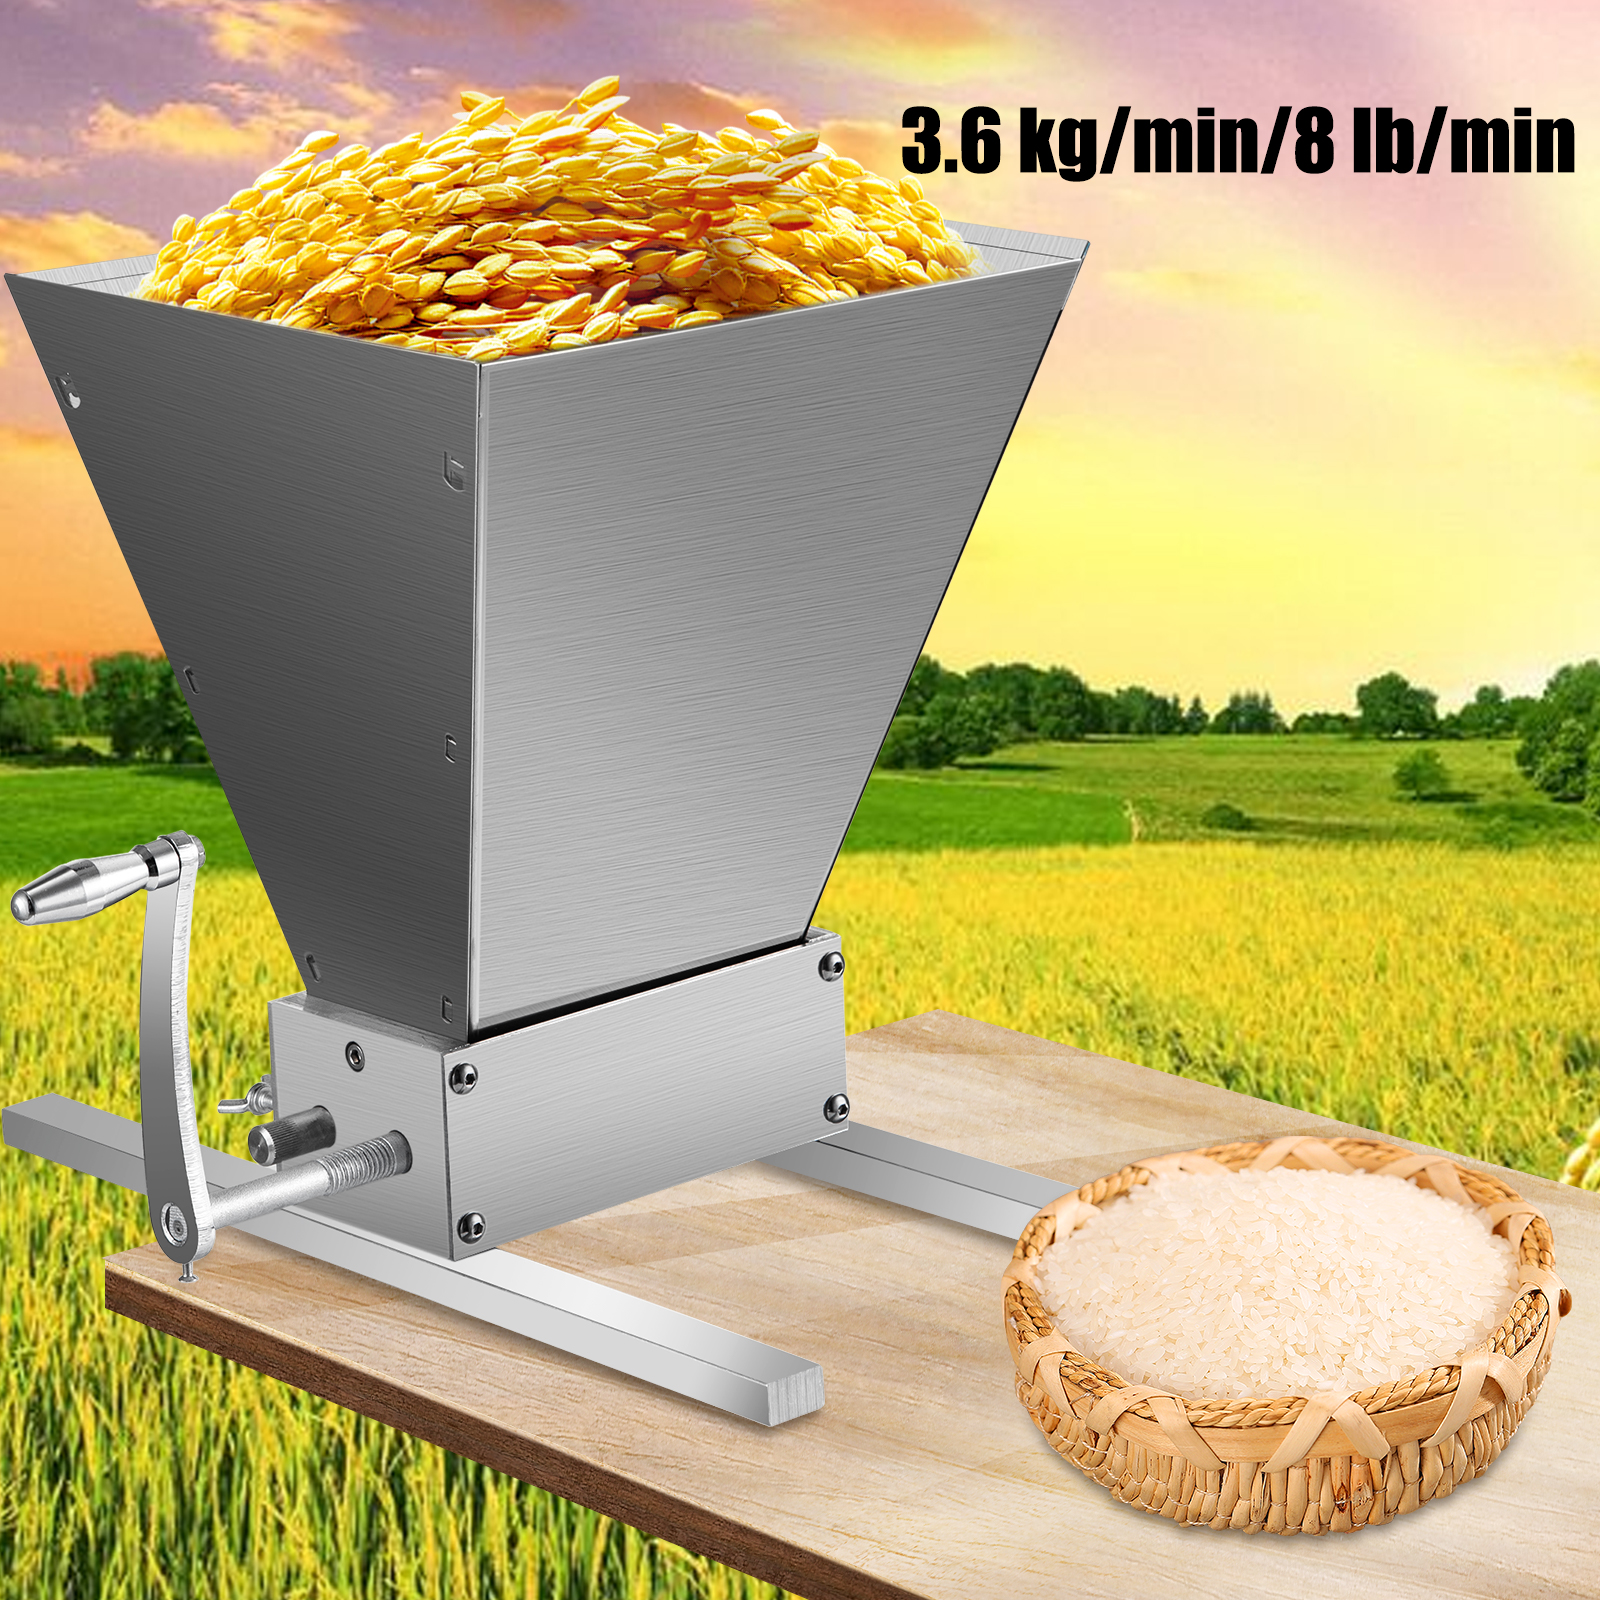 Molino triturador de cereales de grano seco, malta y soja, color plateado